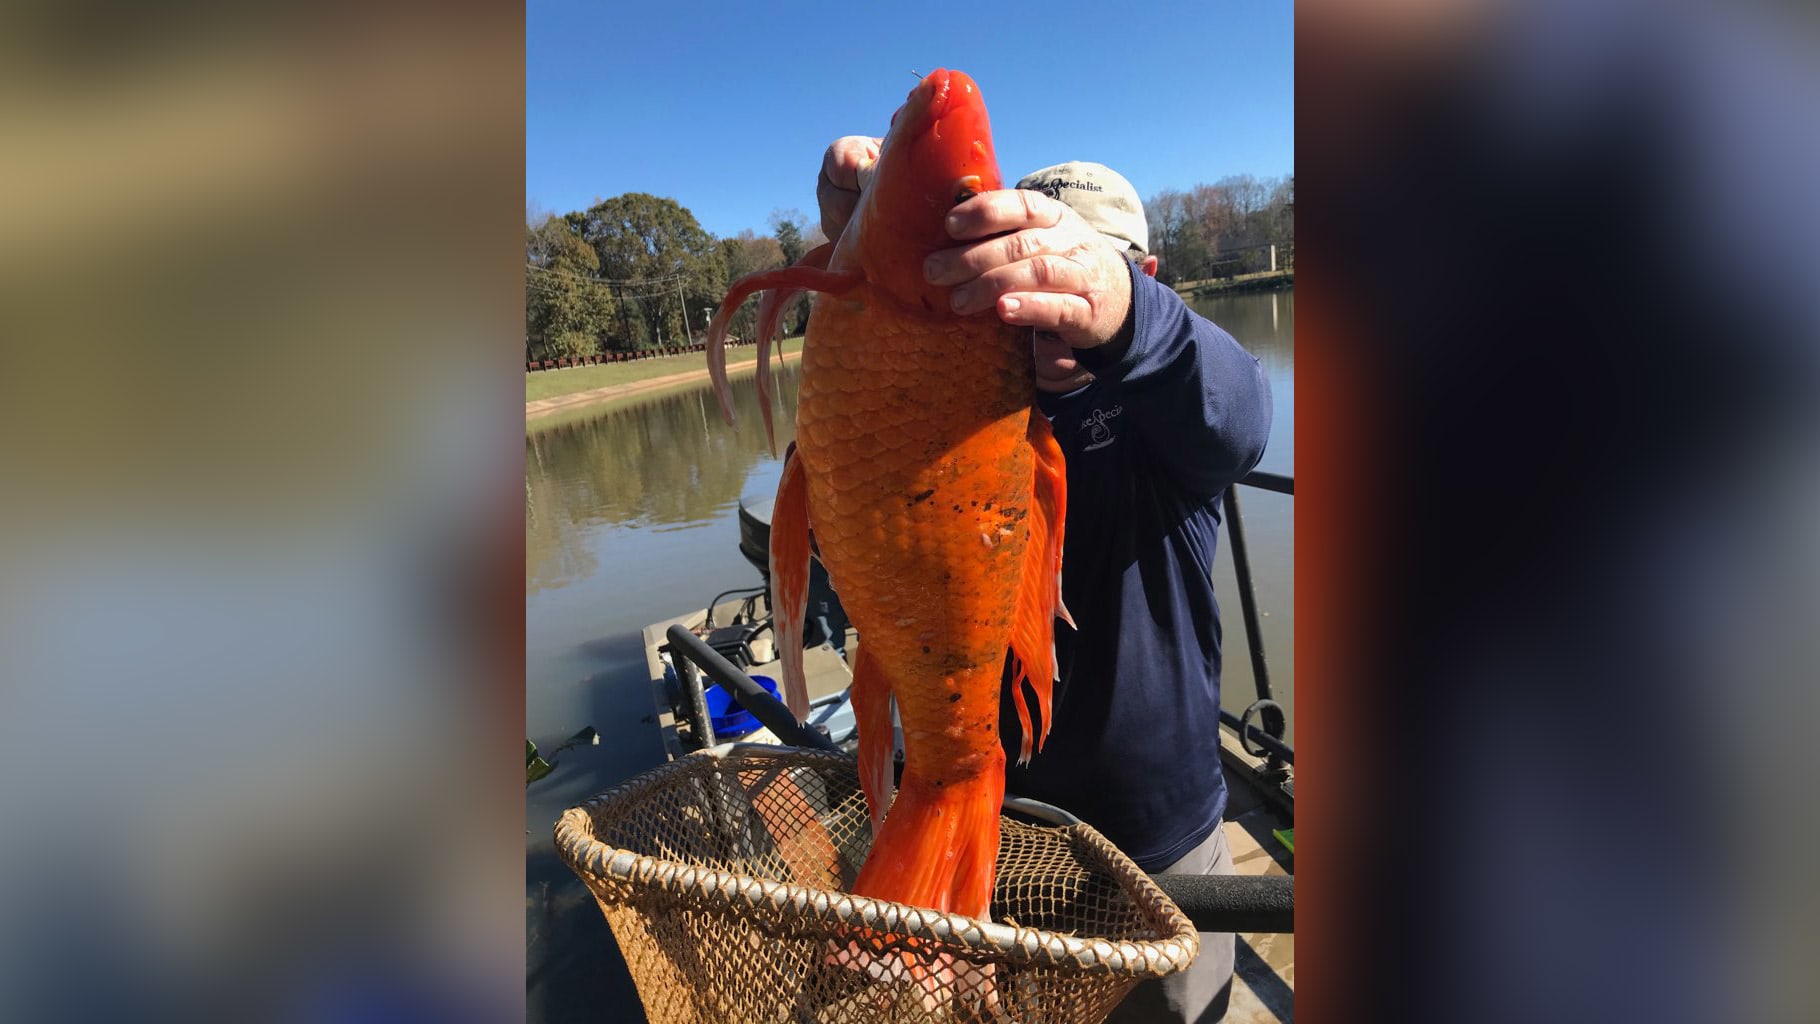 هل سبق أن رأيت واحدة بهذا الحجم؟ العثور على سمكة ذهبية ضخمة في بحيرة بأمريكا